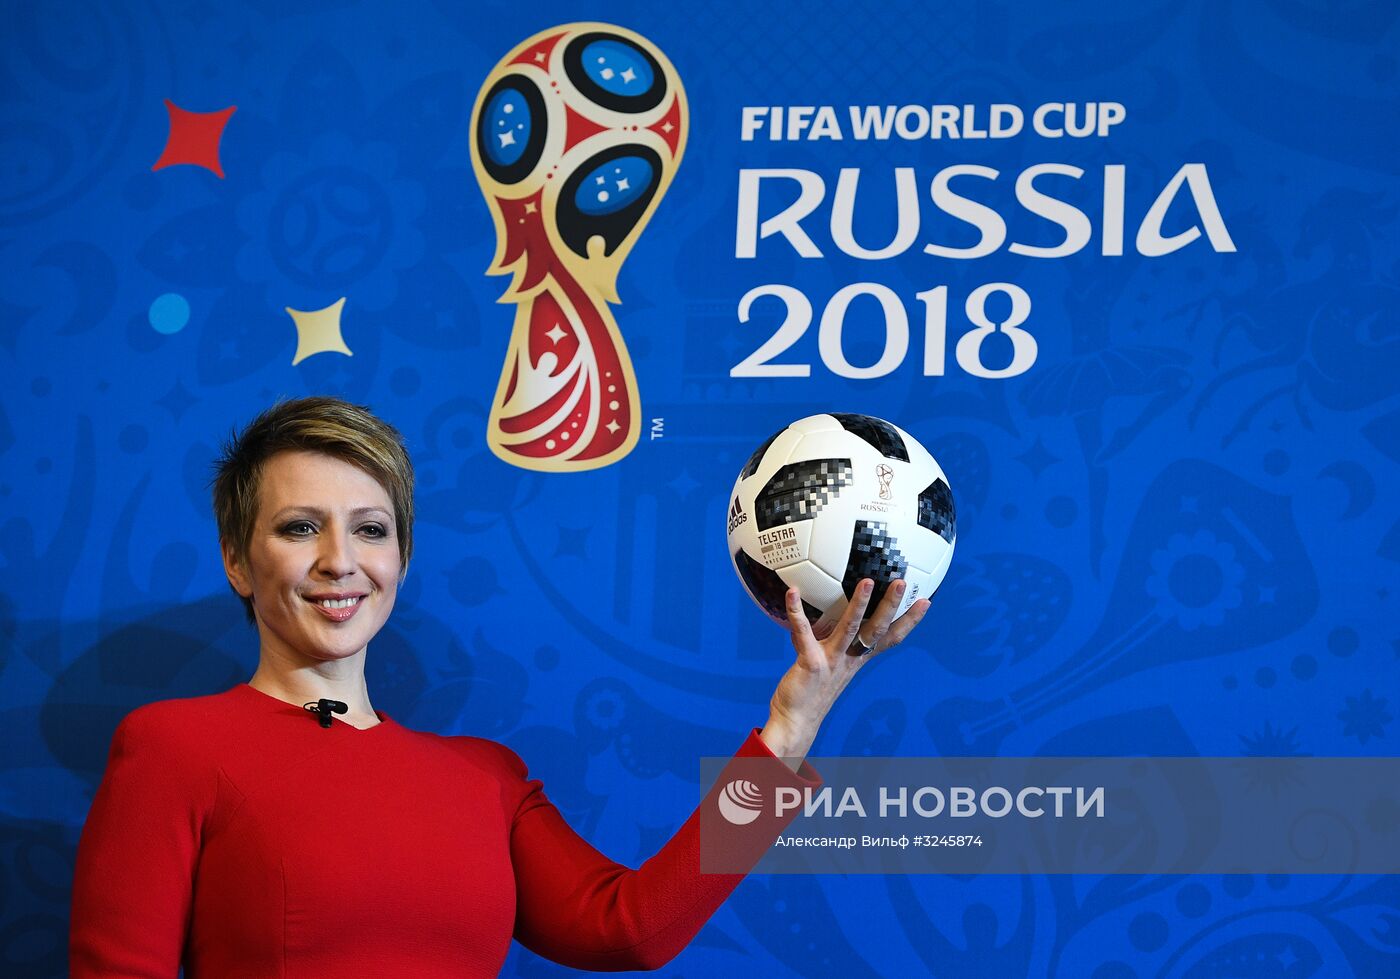 Подготовка к жеребьевке чемпионата мира по футболу 2018